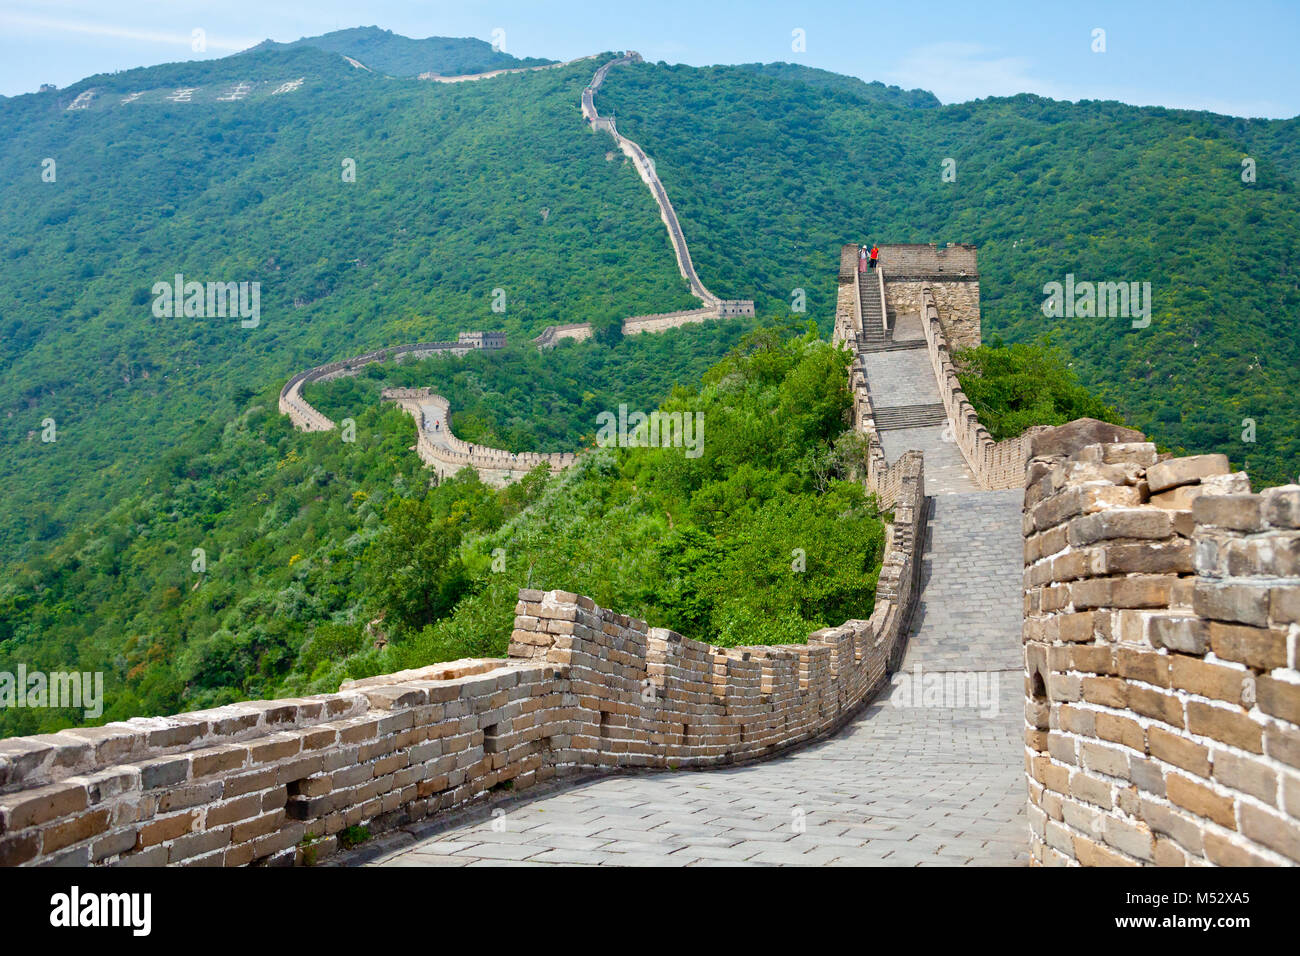 muntianyu great wall china panoramic view Stock Photo